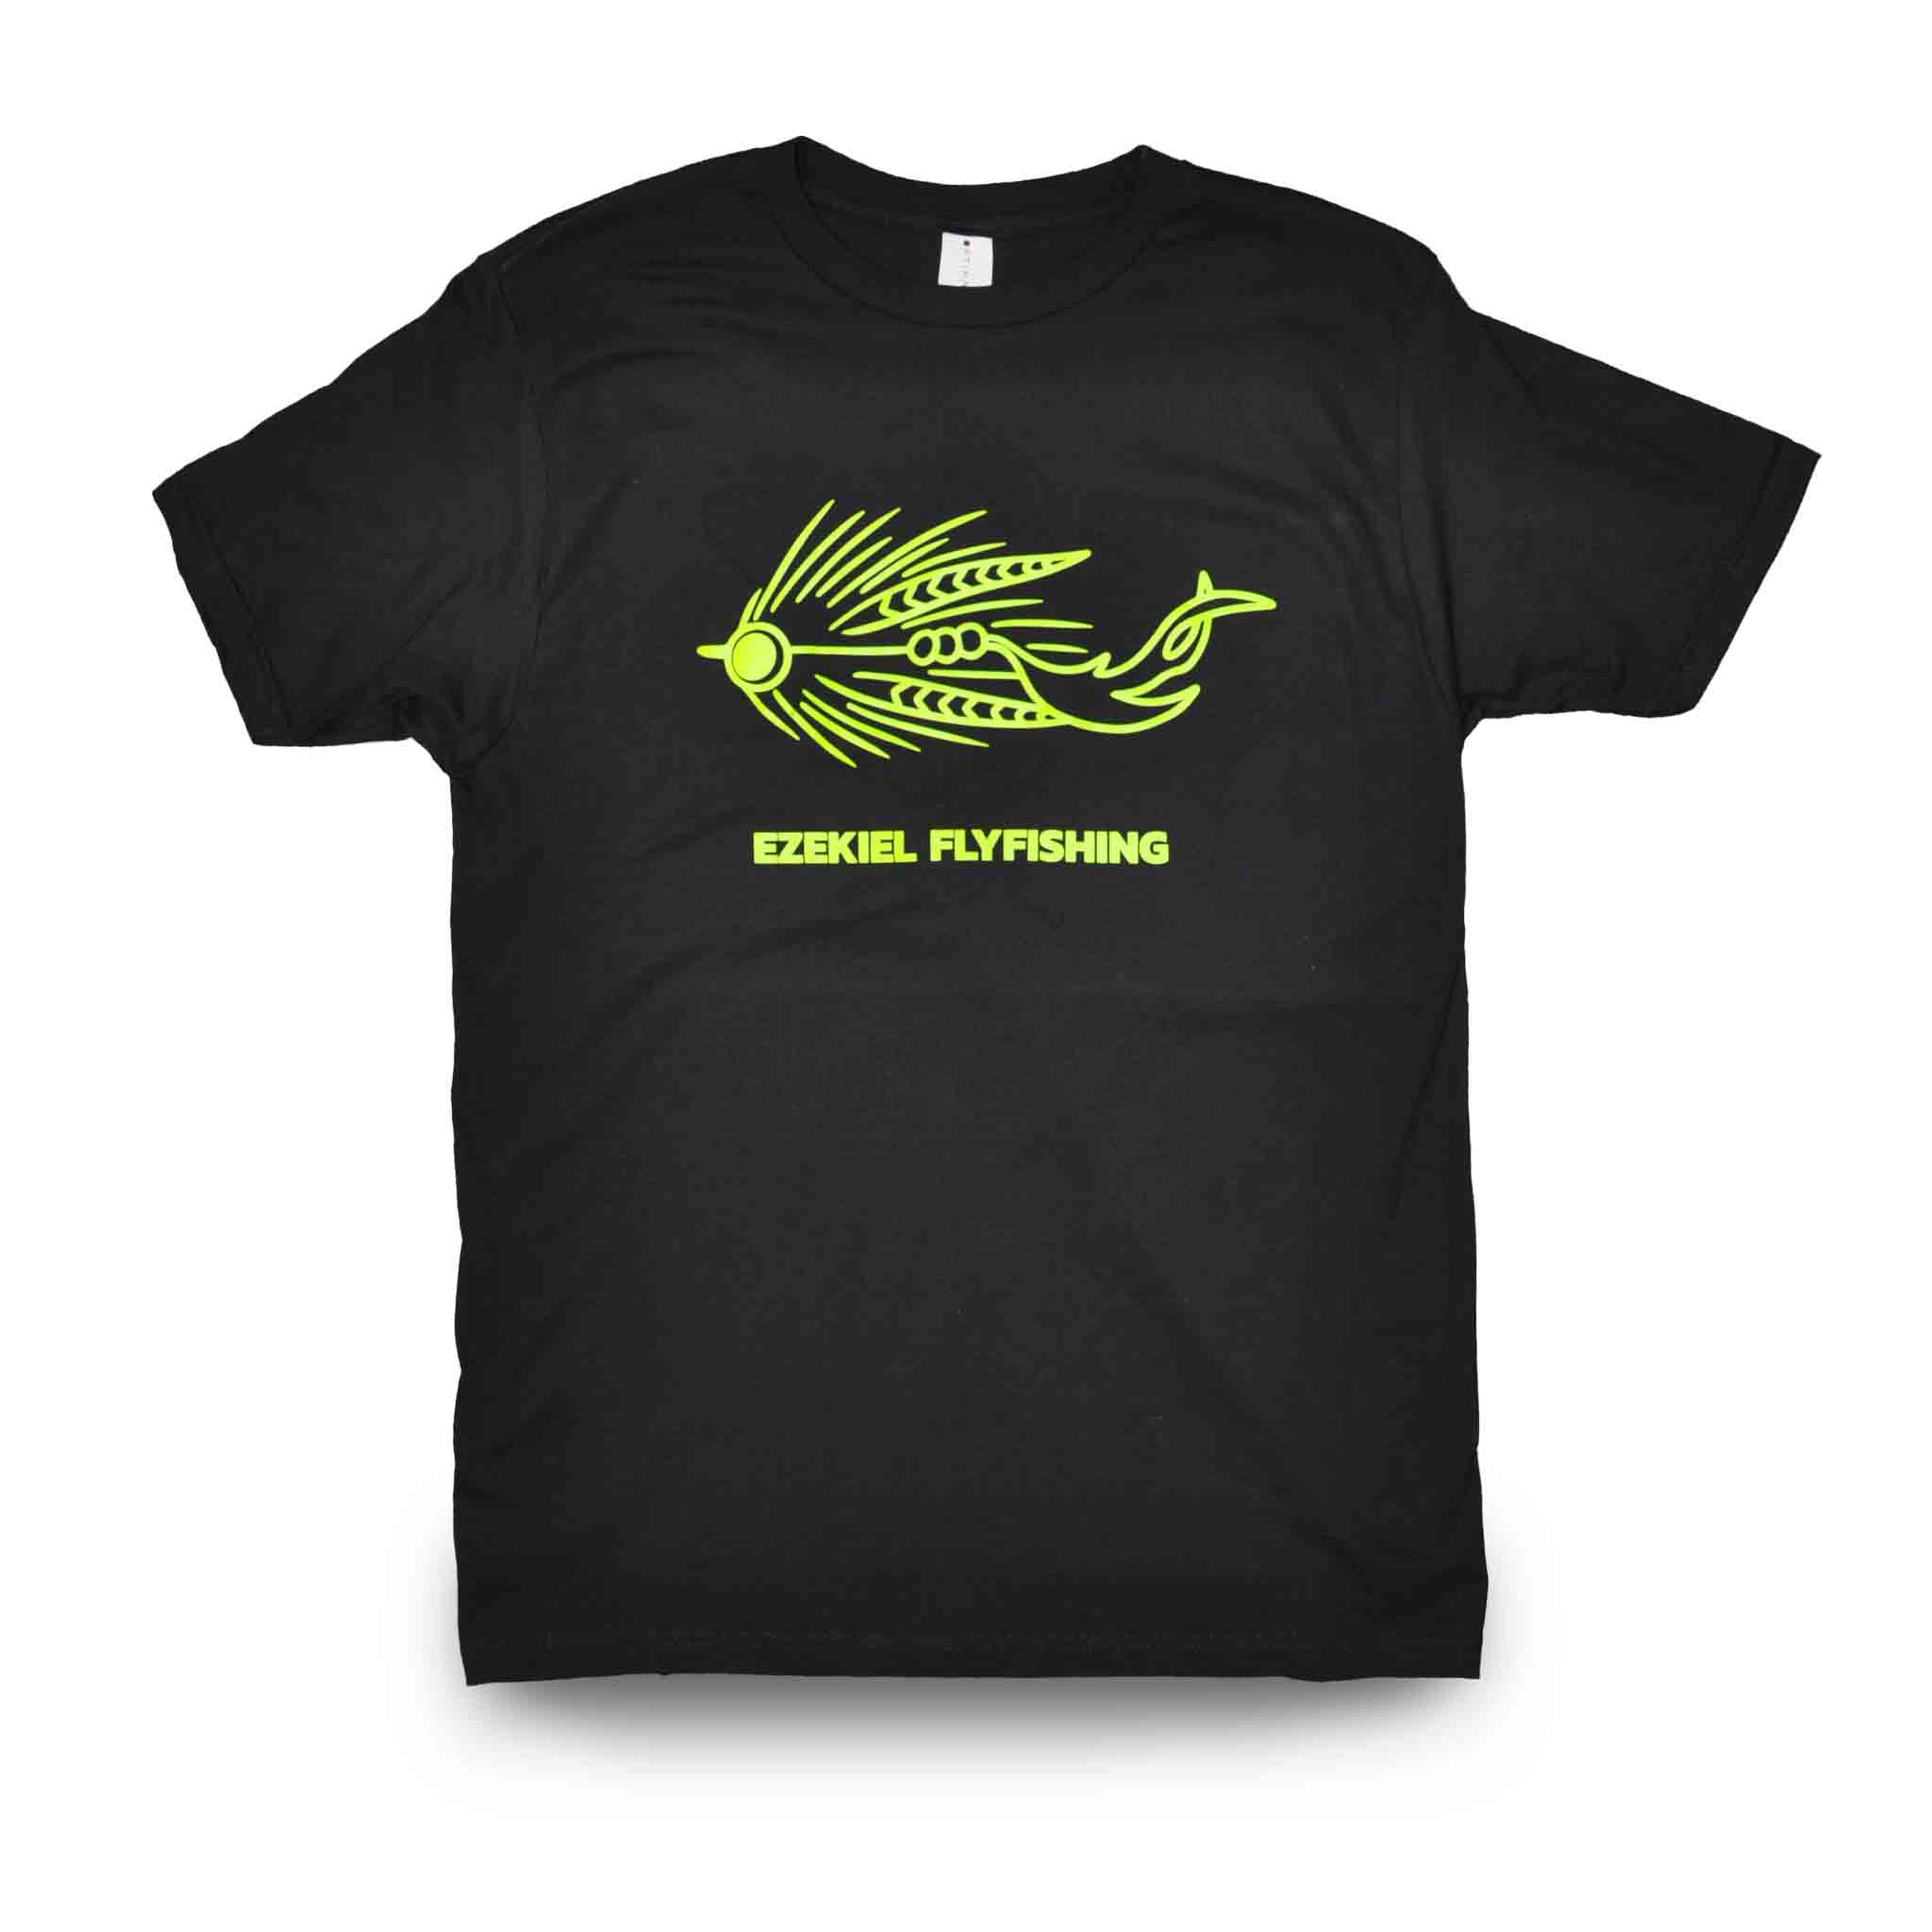 Ezekiel EZ Fly T-Shirt